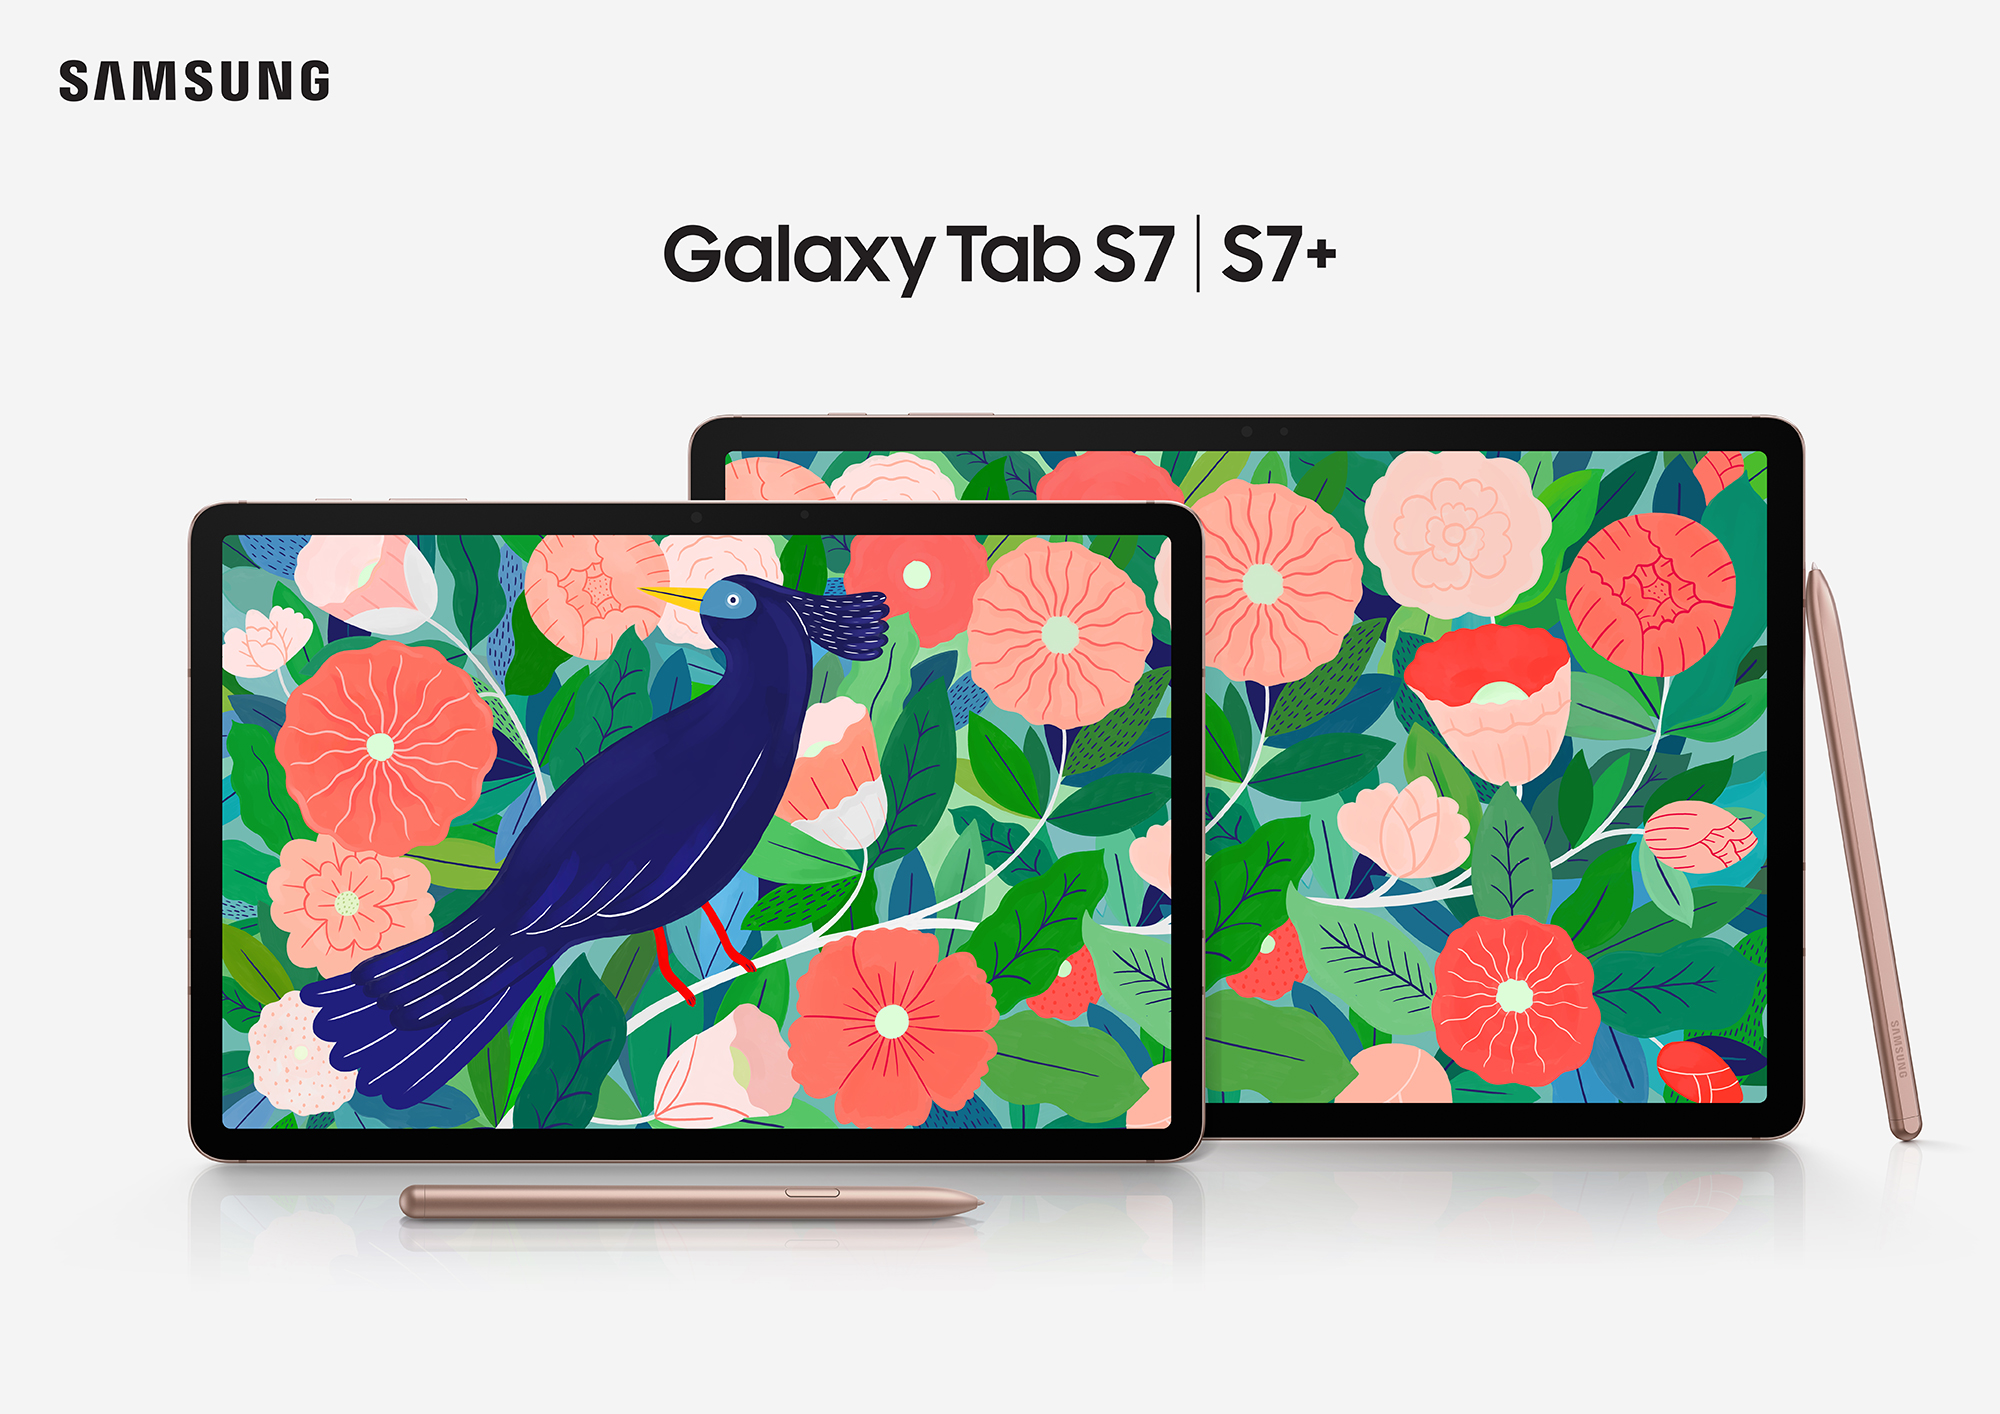 Samsung ra mắt Galaxy Tab S7 và S7+ tại VN, giá từ 19 triệu đồng - Ảnh 2.